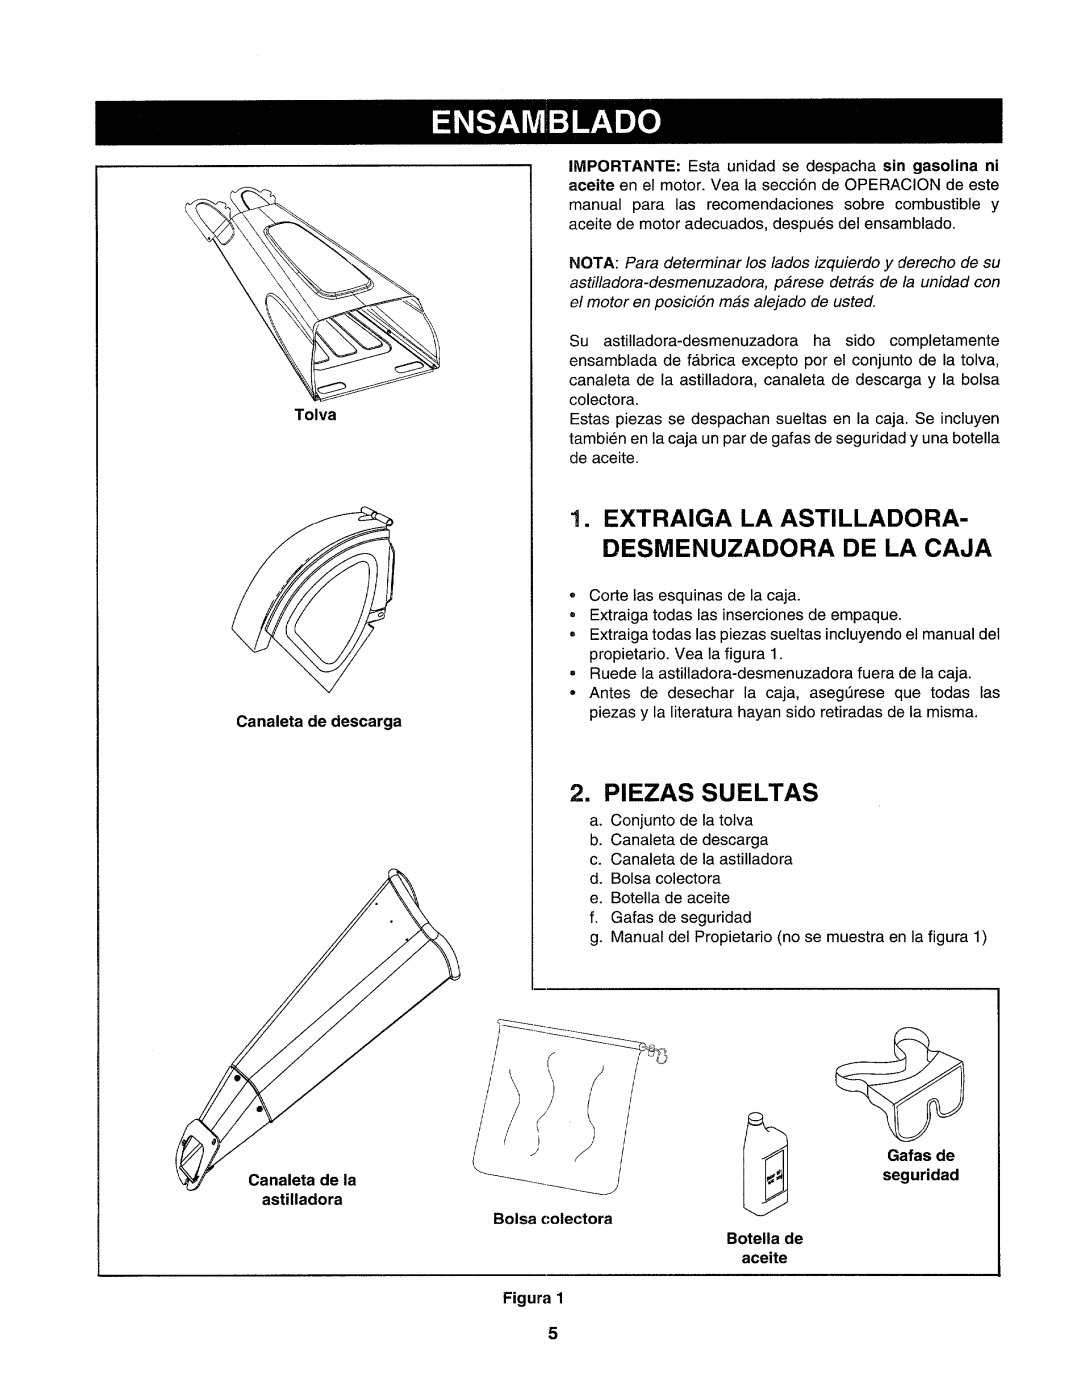 Craftsman 247.77586 manual Extraiga La Astilladora, Desmenuzadora De La Caja, Piezas Sueltas, Canaleta de la astilladora 